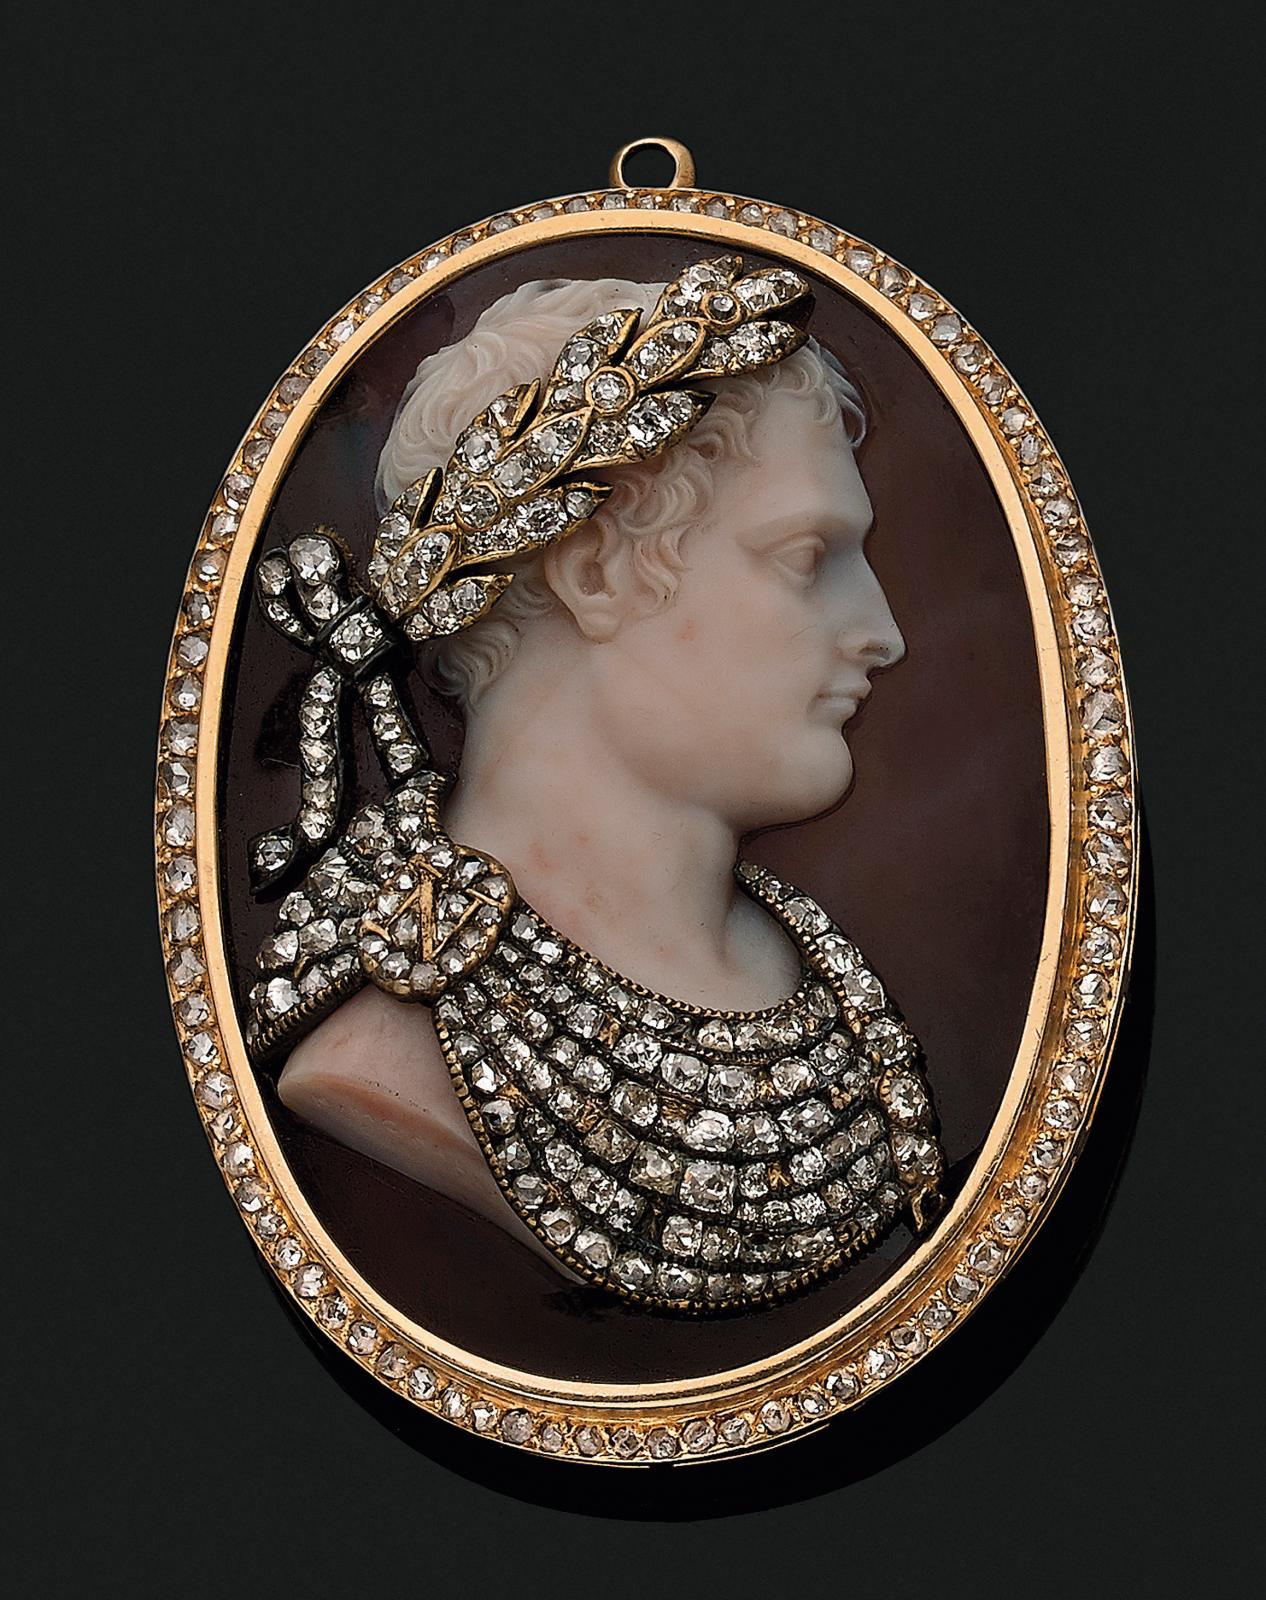 Nicola Morelli (1771-1838), médaillon de cou adapté en broche, orné d’un camée sur agate à deux couches représentant l’empereur Napoléon I